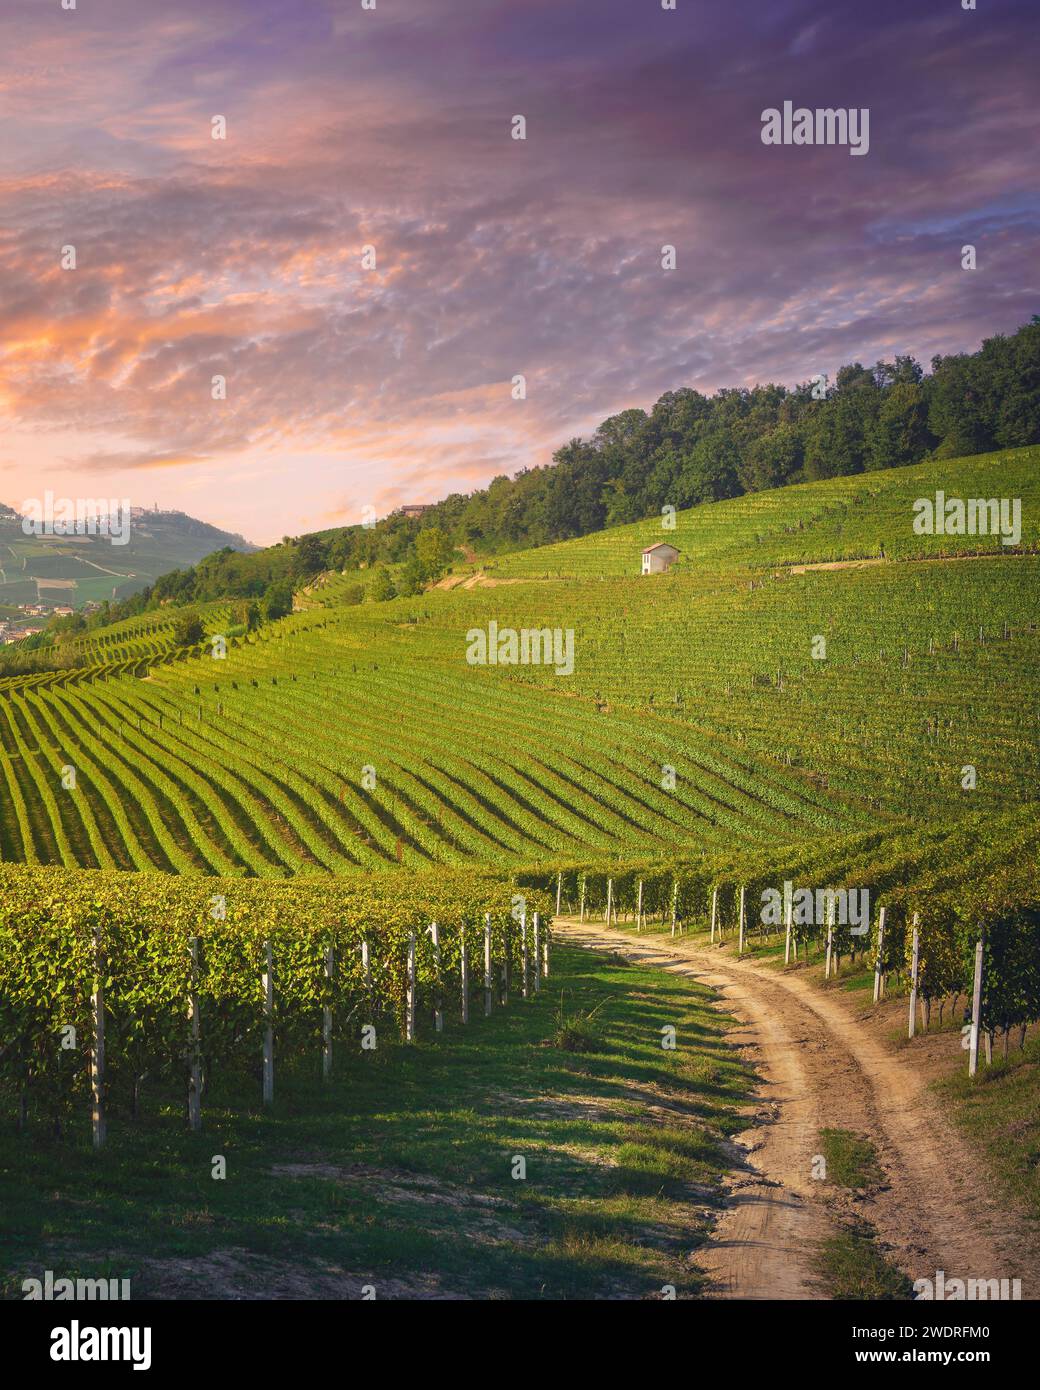 Vue sur les vignobles Langhe au coucher du soleil, les villages de Barolo et la Morra en arrière-plan, site du patrimoine mondial de l'UNESCO, région du Piémont. Italie, Europe. Banque D'Images